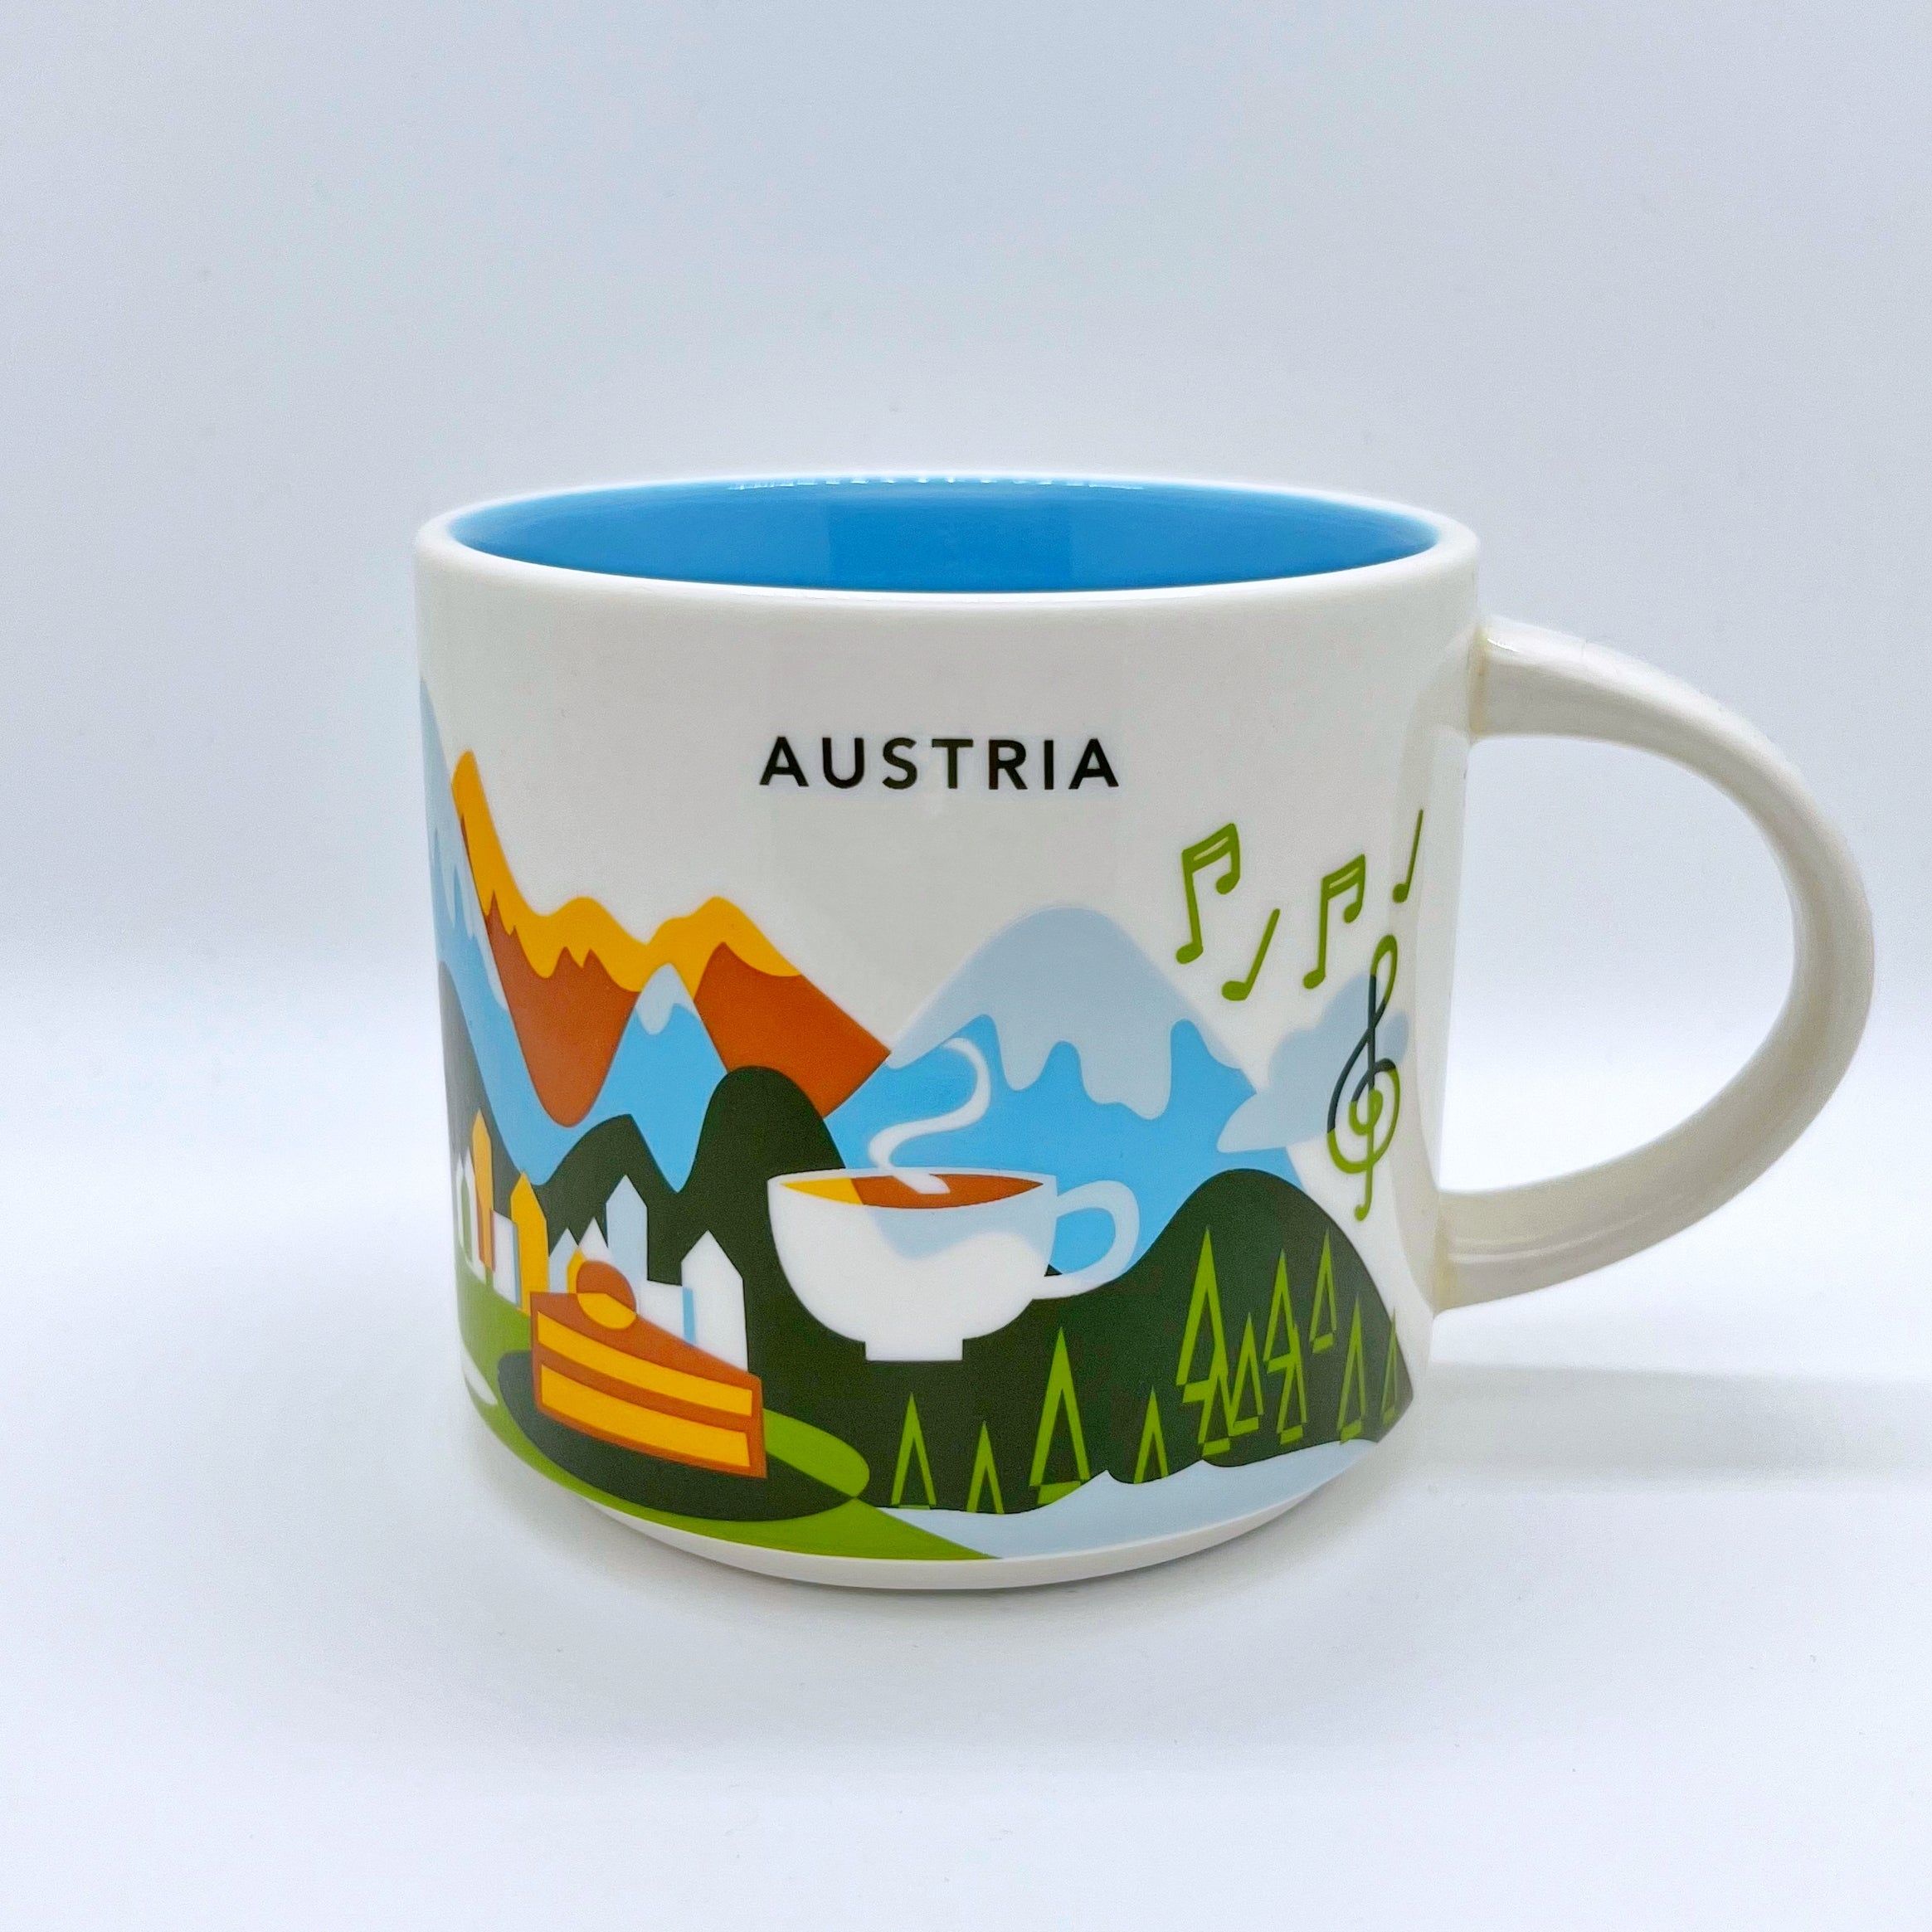 Kaffee Tee oder Cappuccino Tasse von Starbucks mit gemalten Bildern aus dem Land Österreich